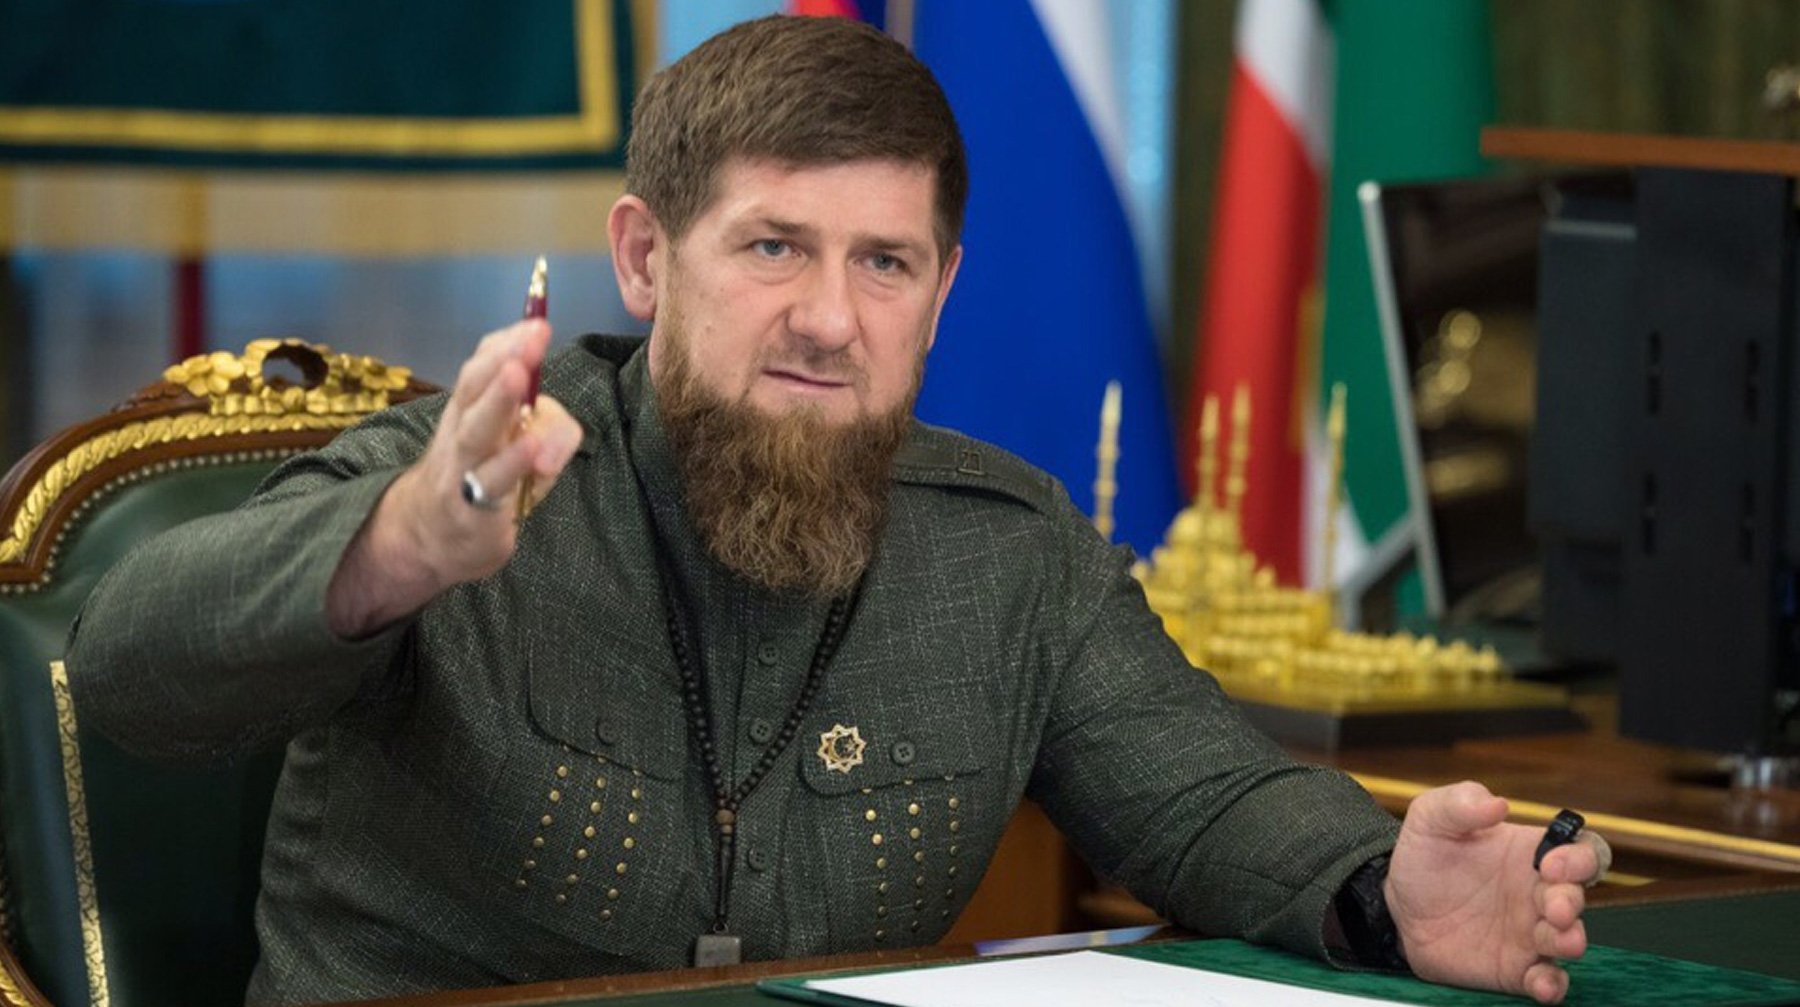 Глава Чечни призвал ООН и международные организации вмешаться в ситуацию и принять меры по недопущению внесудебных казней Фото: © Вконтакте / Рамзан Кадыров